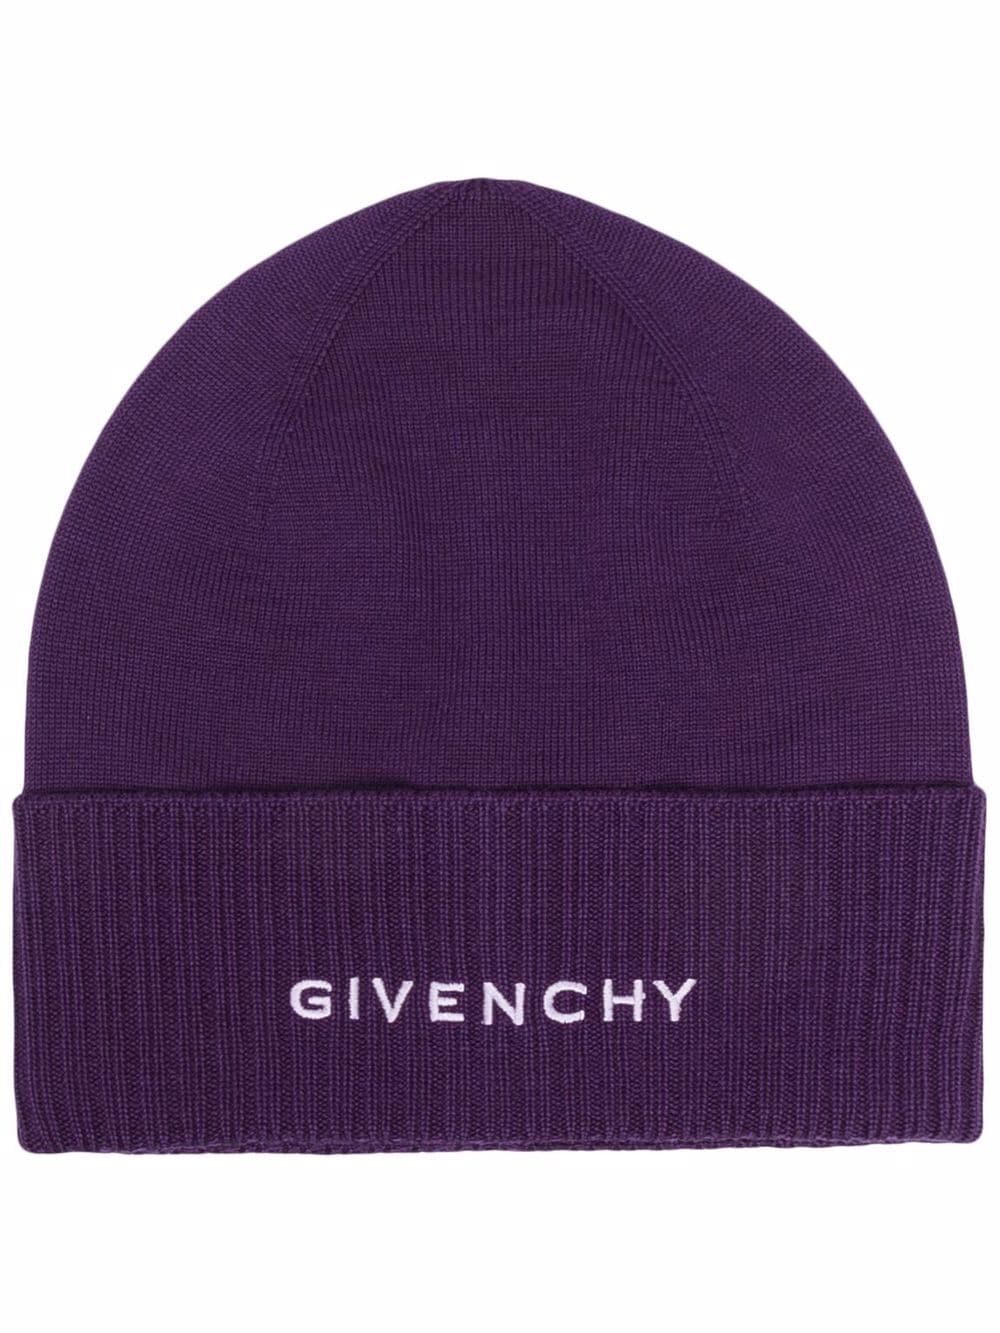 фото Givenchy шерстяная шапка бини с логотипом